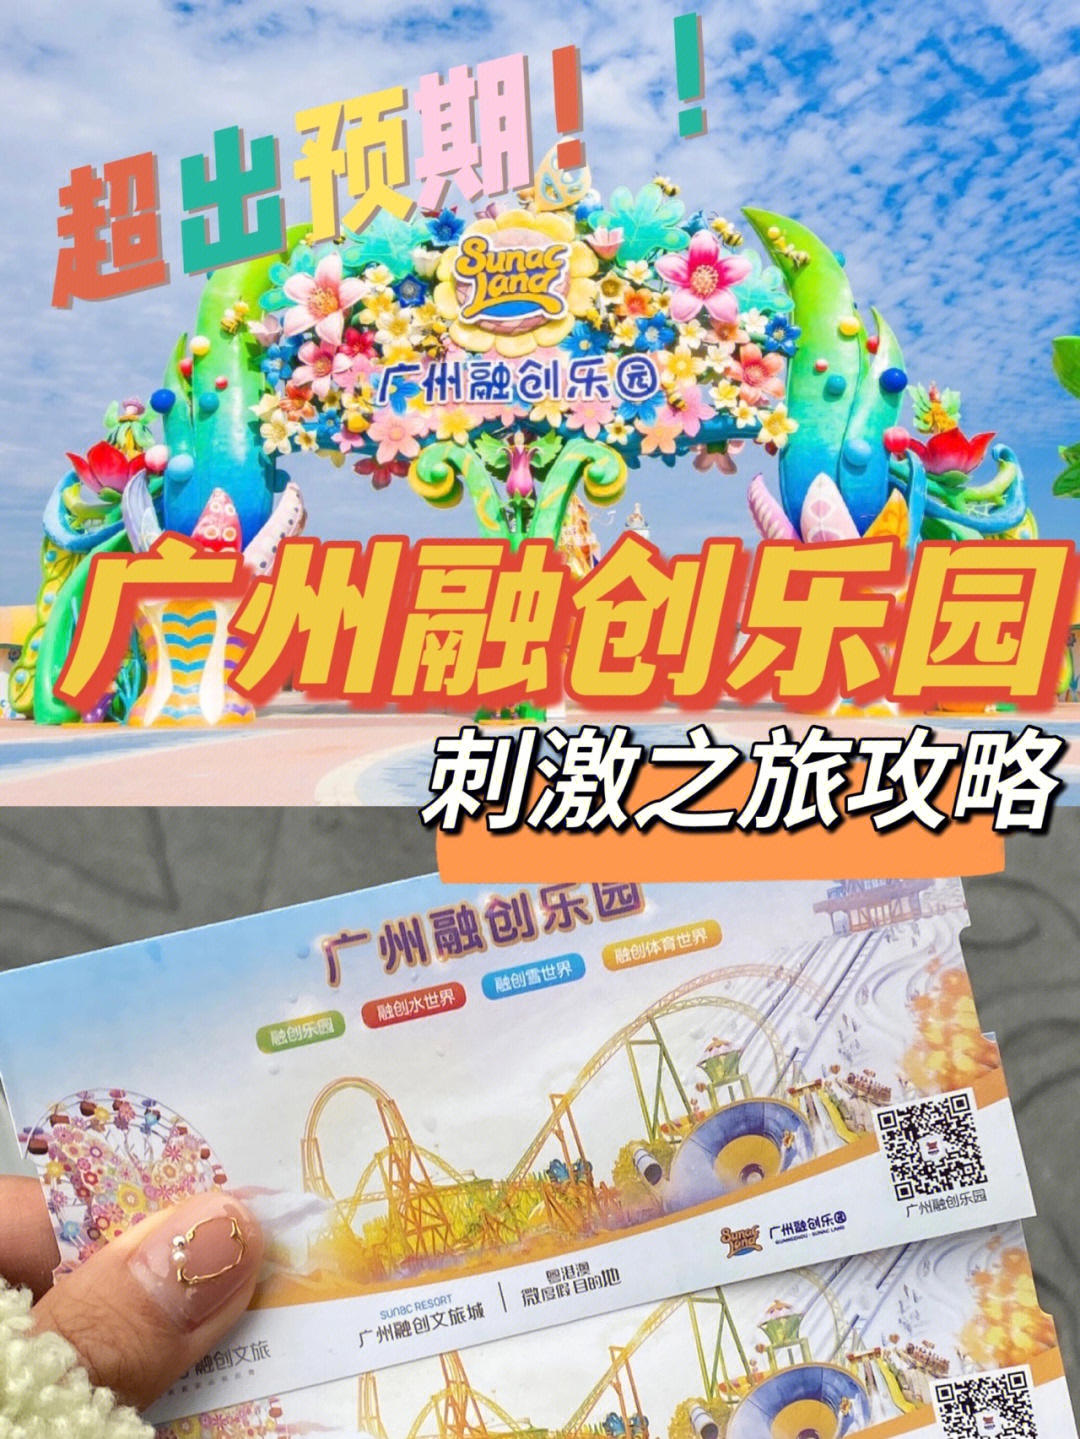 广州融创乐园刺激之旅游玩攻略